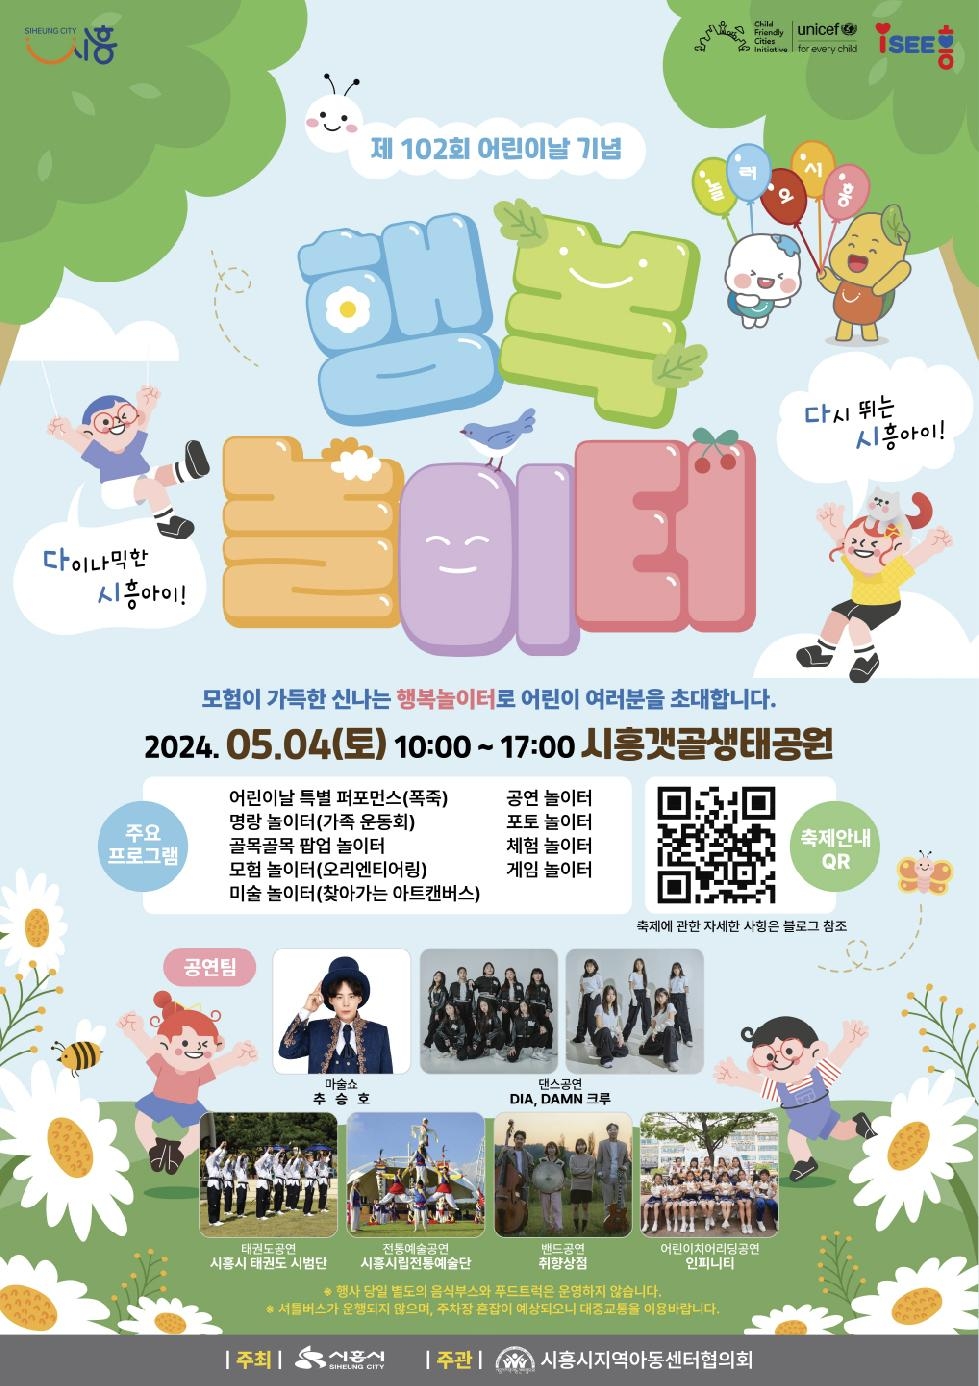 시흥시 어린이날 행사, 5월 4일 시흥갯골생태공원에서 개최...  모험 